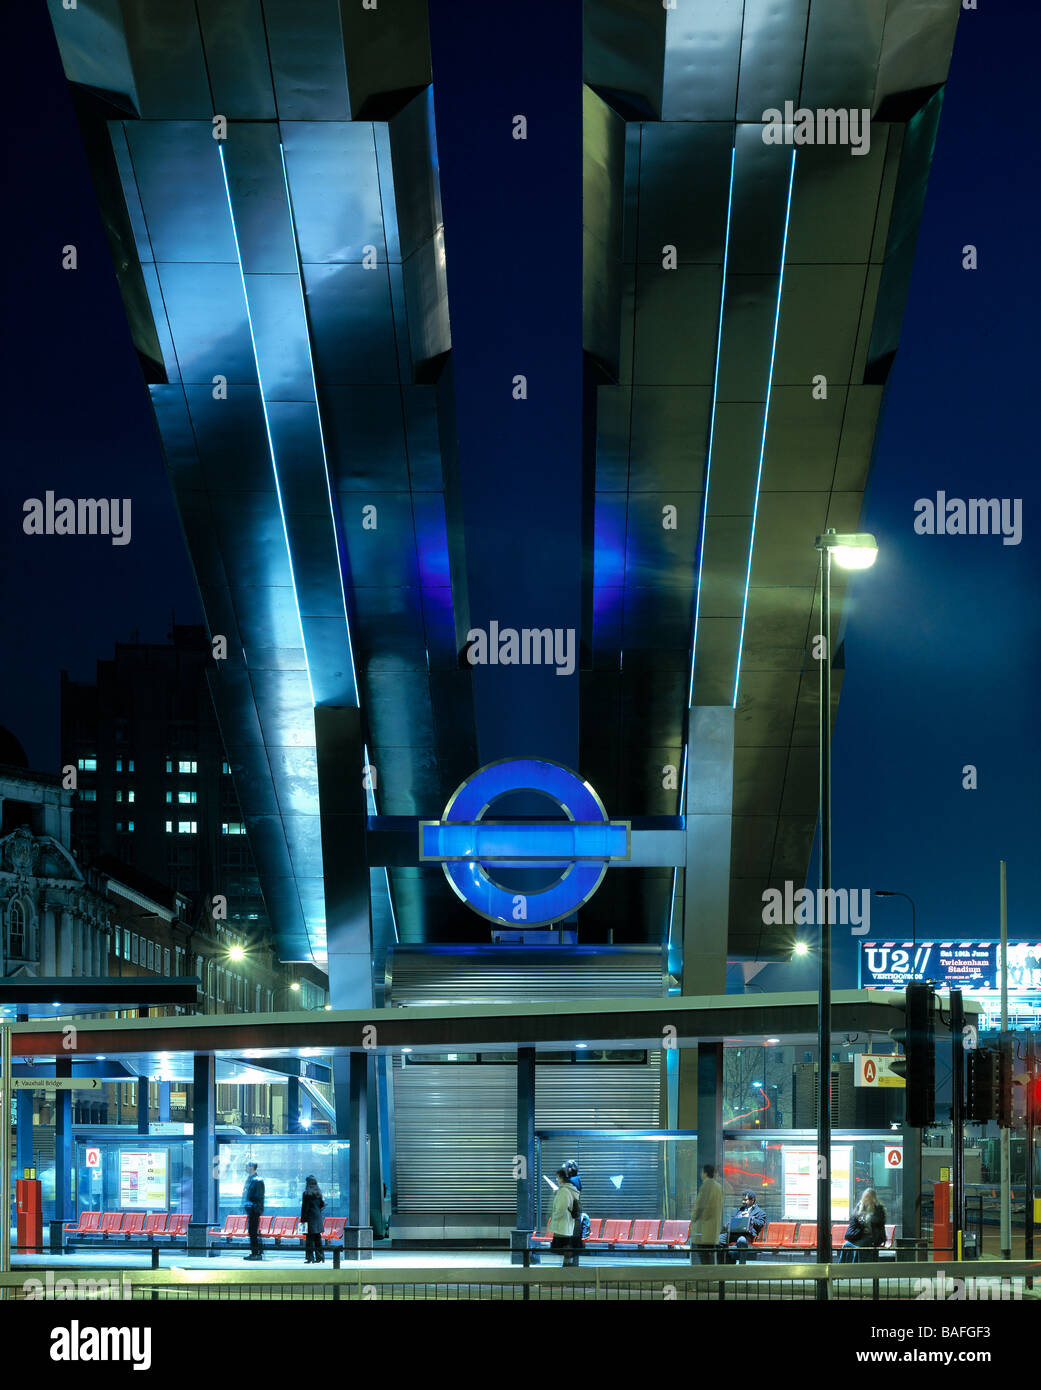 La gare routière de Vauxhall Cross, Londres, Royaume-Uni, Arup Associates, Vauxhall Cross station de bus de nuit. Banque D'Images